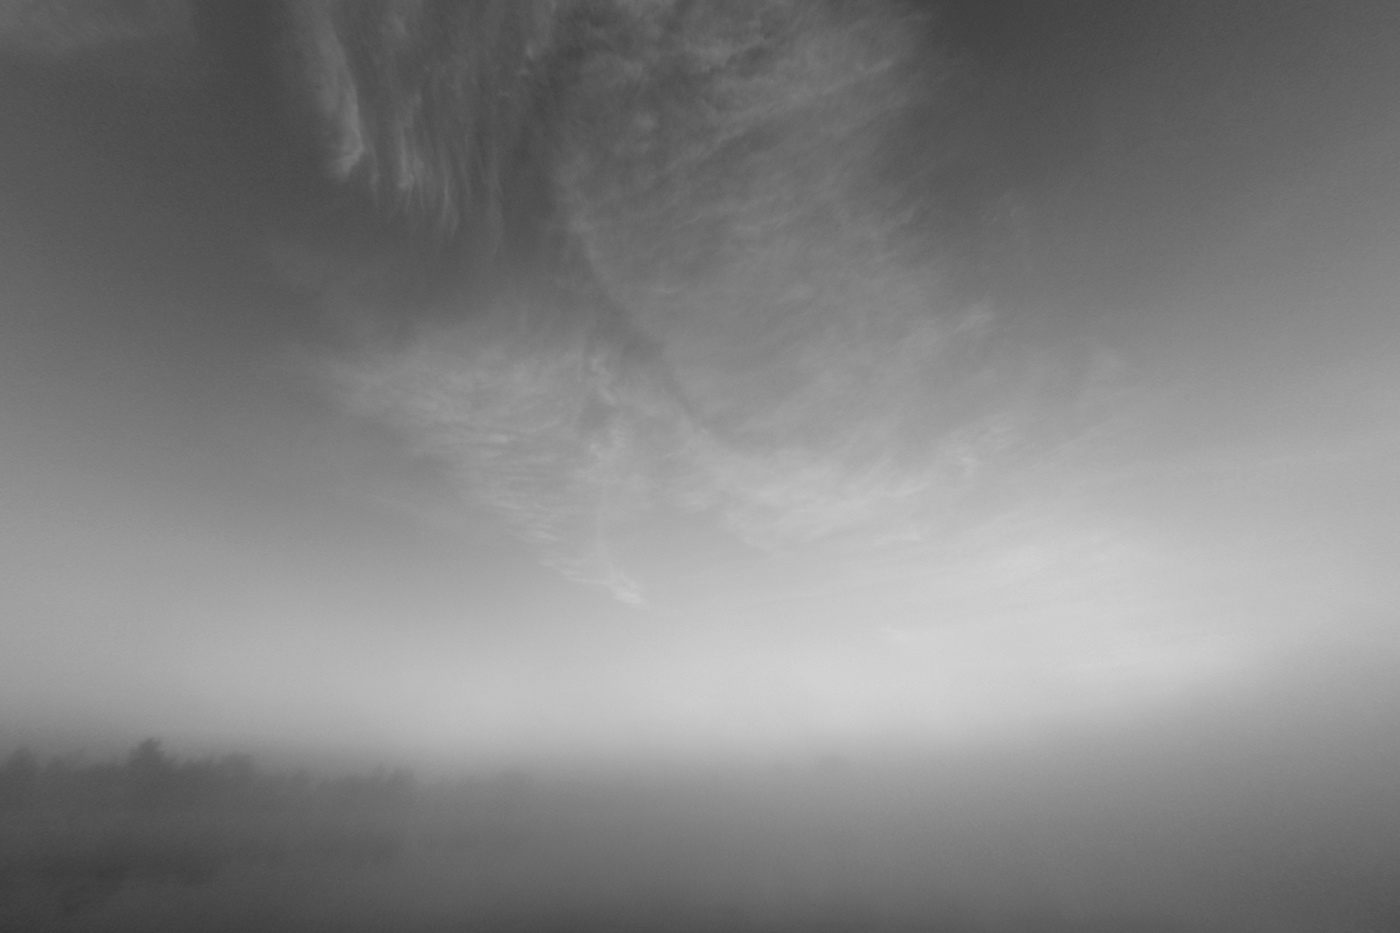 fog lietuva lithuania Memelland Mindaugas Buivydas minimal Minimalism mist river